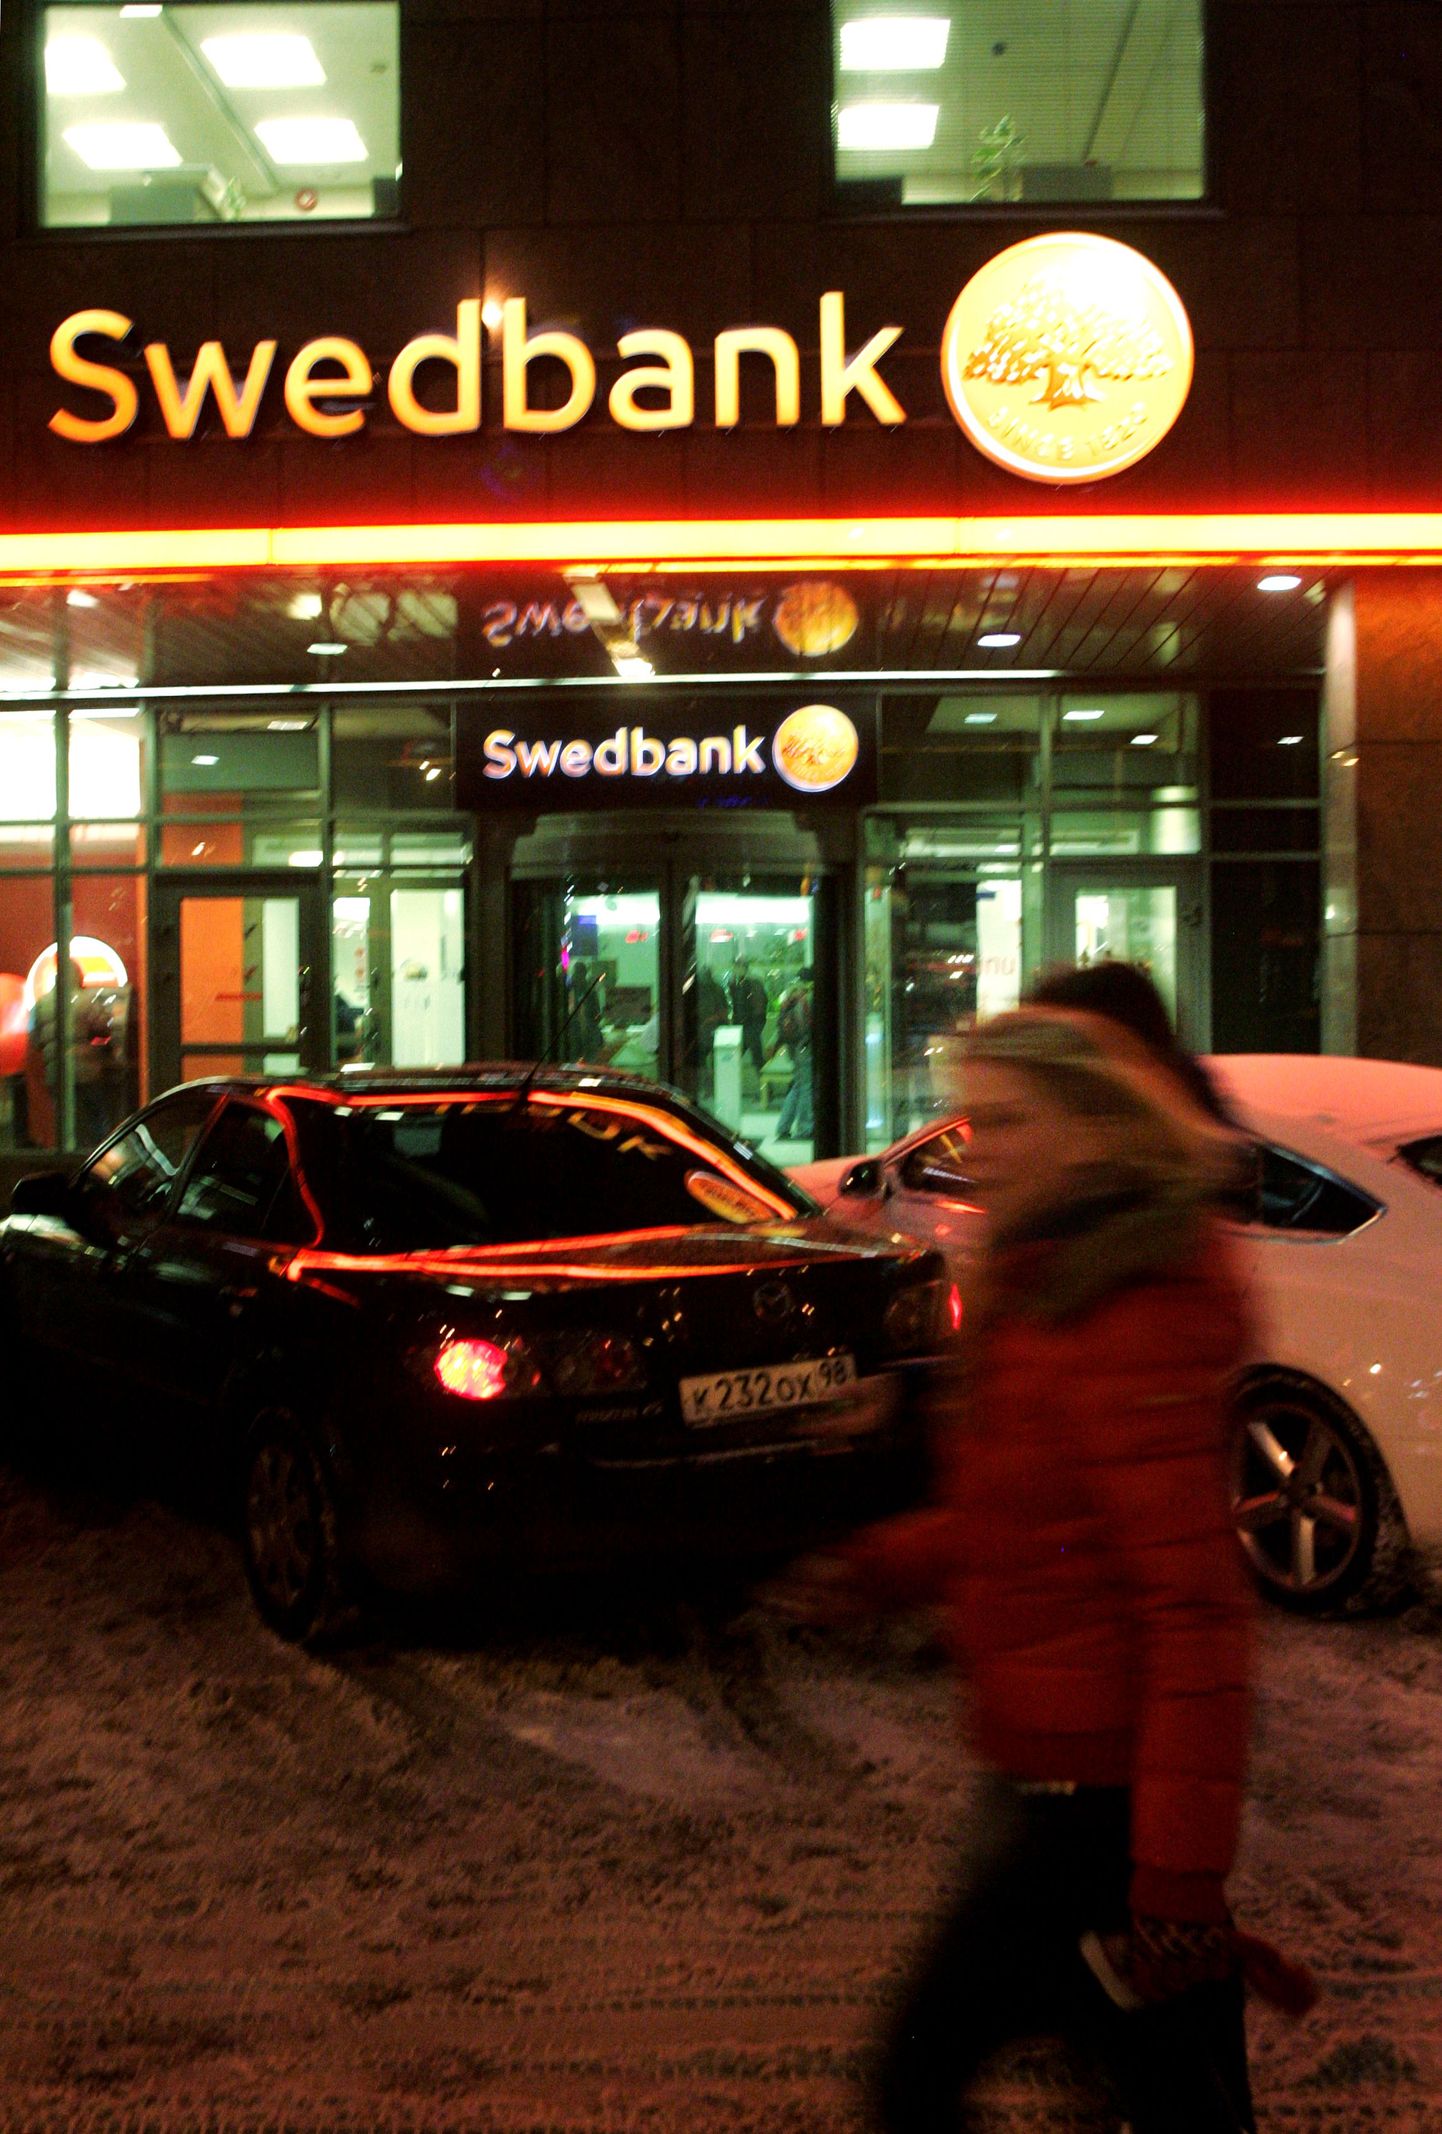 Swedbank teeb nädalavahetusel öötundidel e-kanalite hooldustöid.